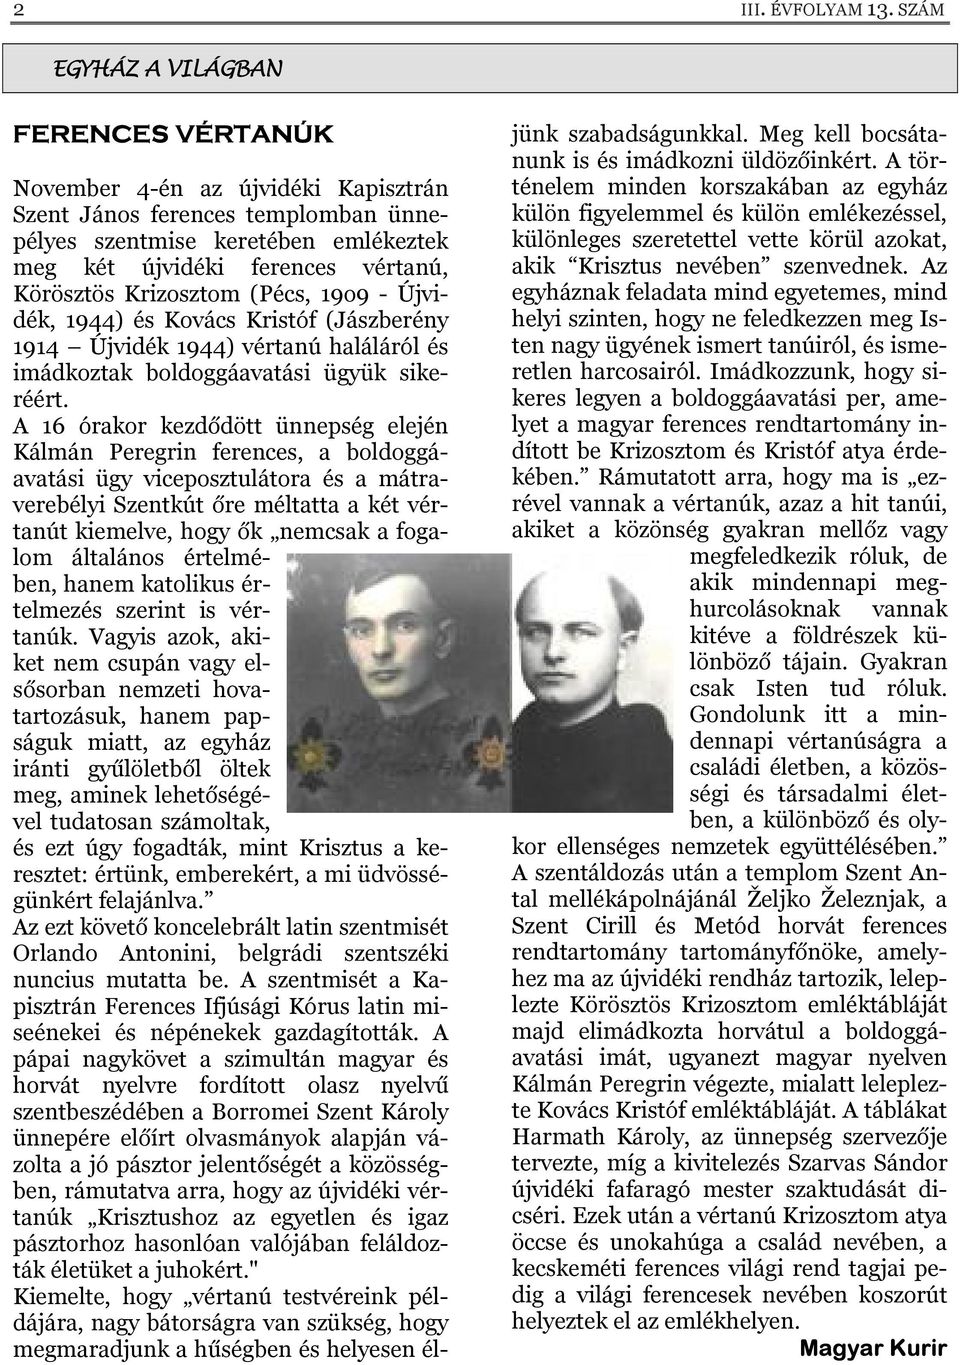 Krizosztom (Pécs, 19o9 - Újvidék, 1944) és Kovács Kristóf (Jászberény 1914 Újvidék 1944) vértanú haláláról és imádkoztak boldoggáavatási ügyük sikeréért.